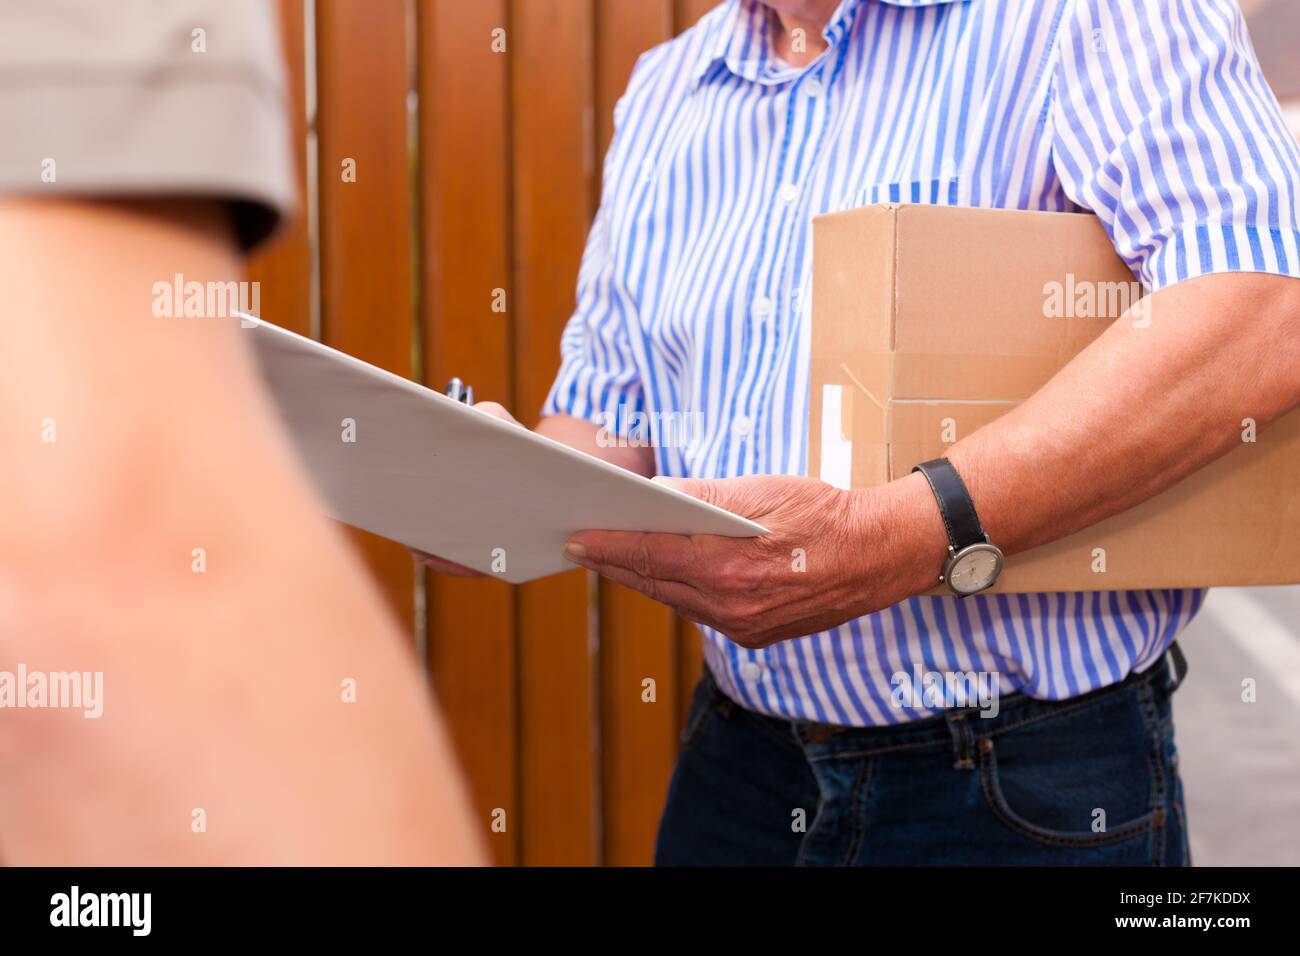 Servizio postale - consegna di un pacco; il postino consegna il pacco al cliente di fronte a casa sua; il cliente riceve la consegna Foto Stock